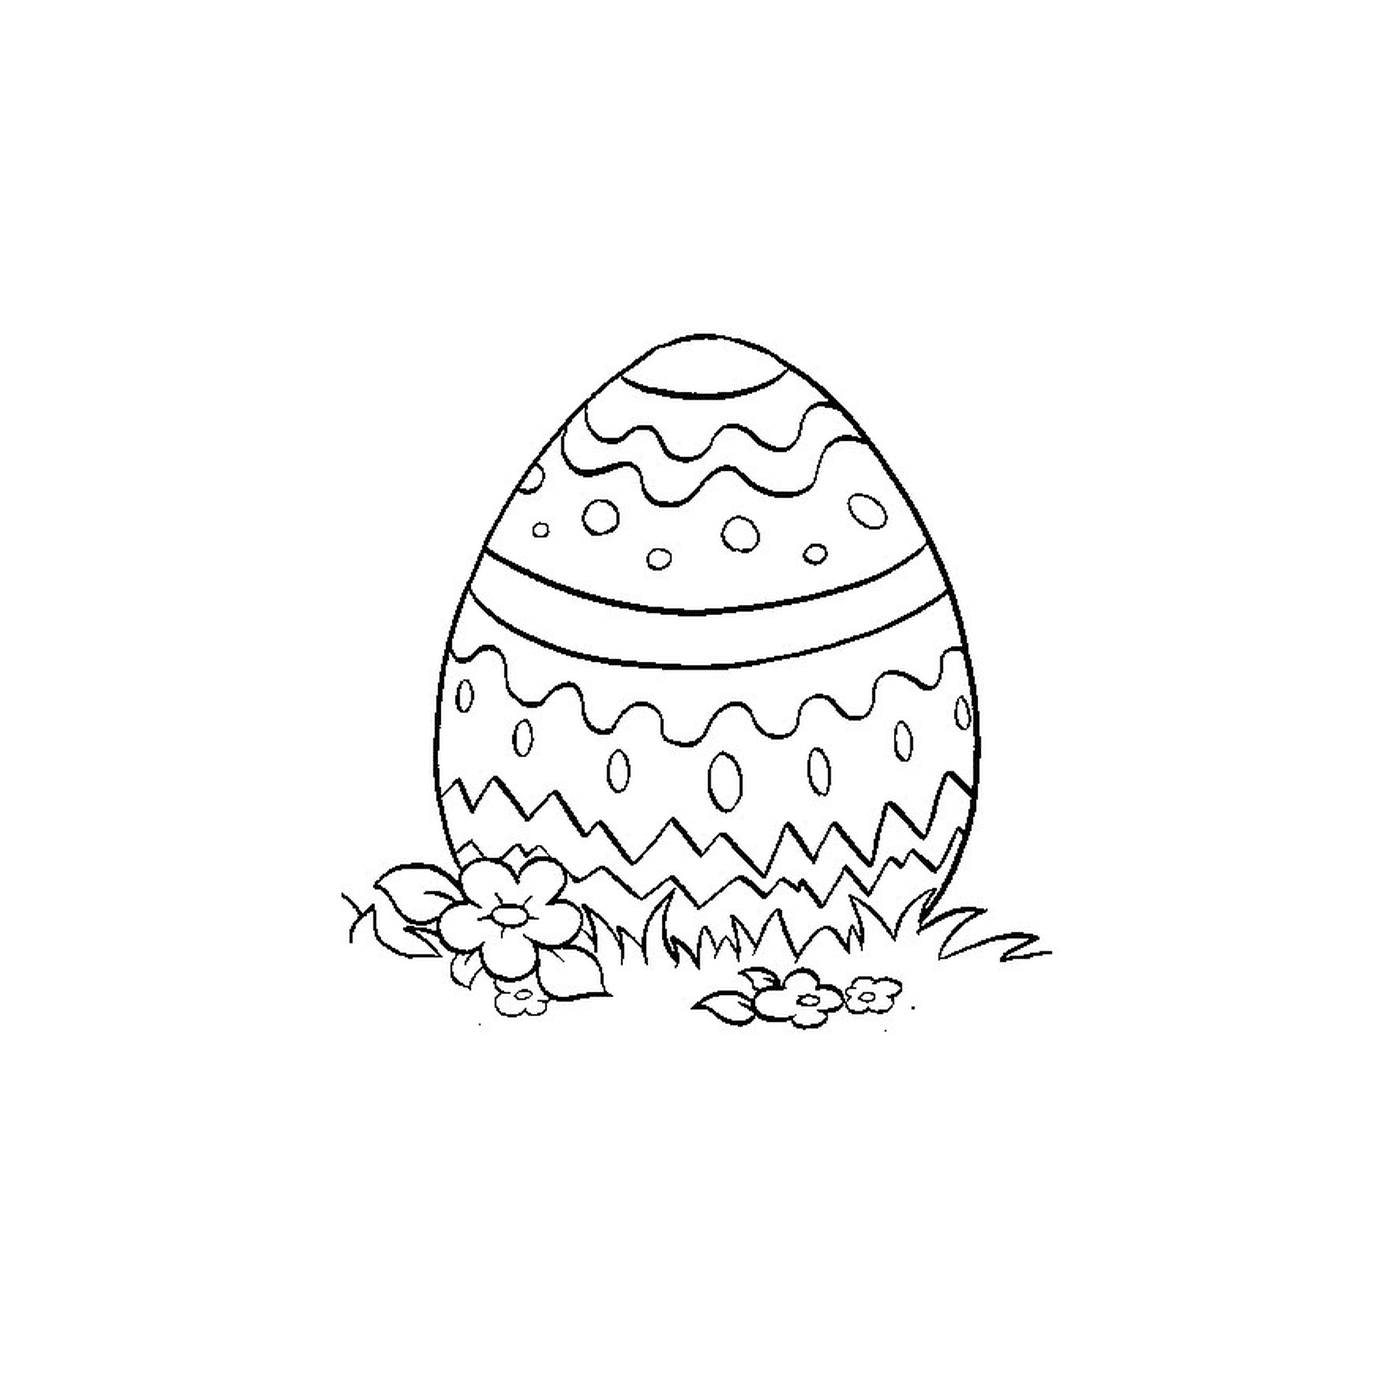  An Easter Egg 